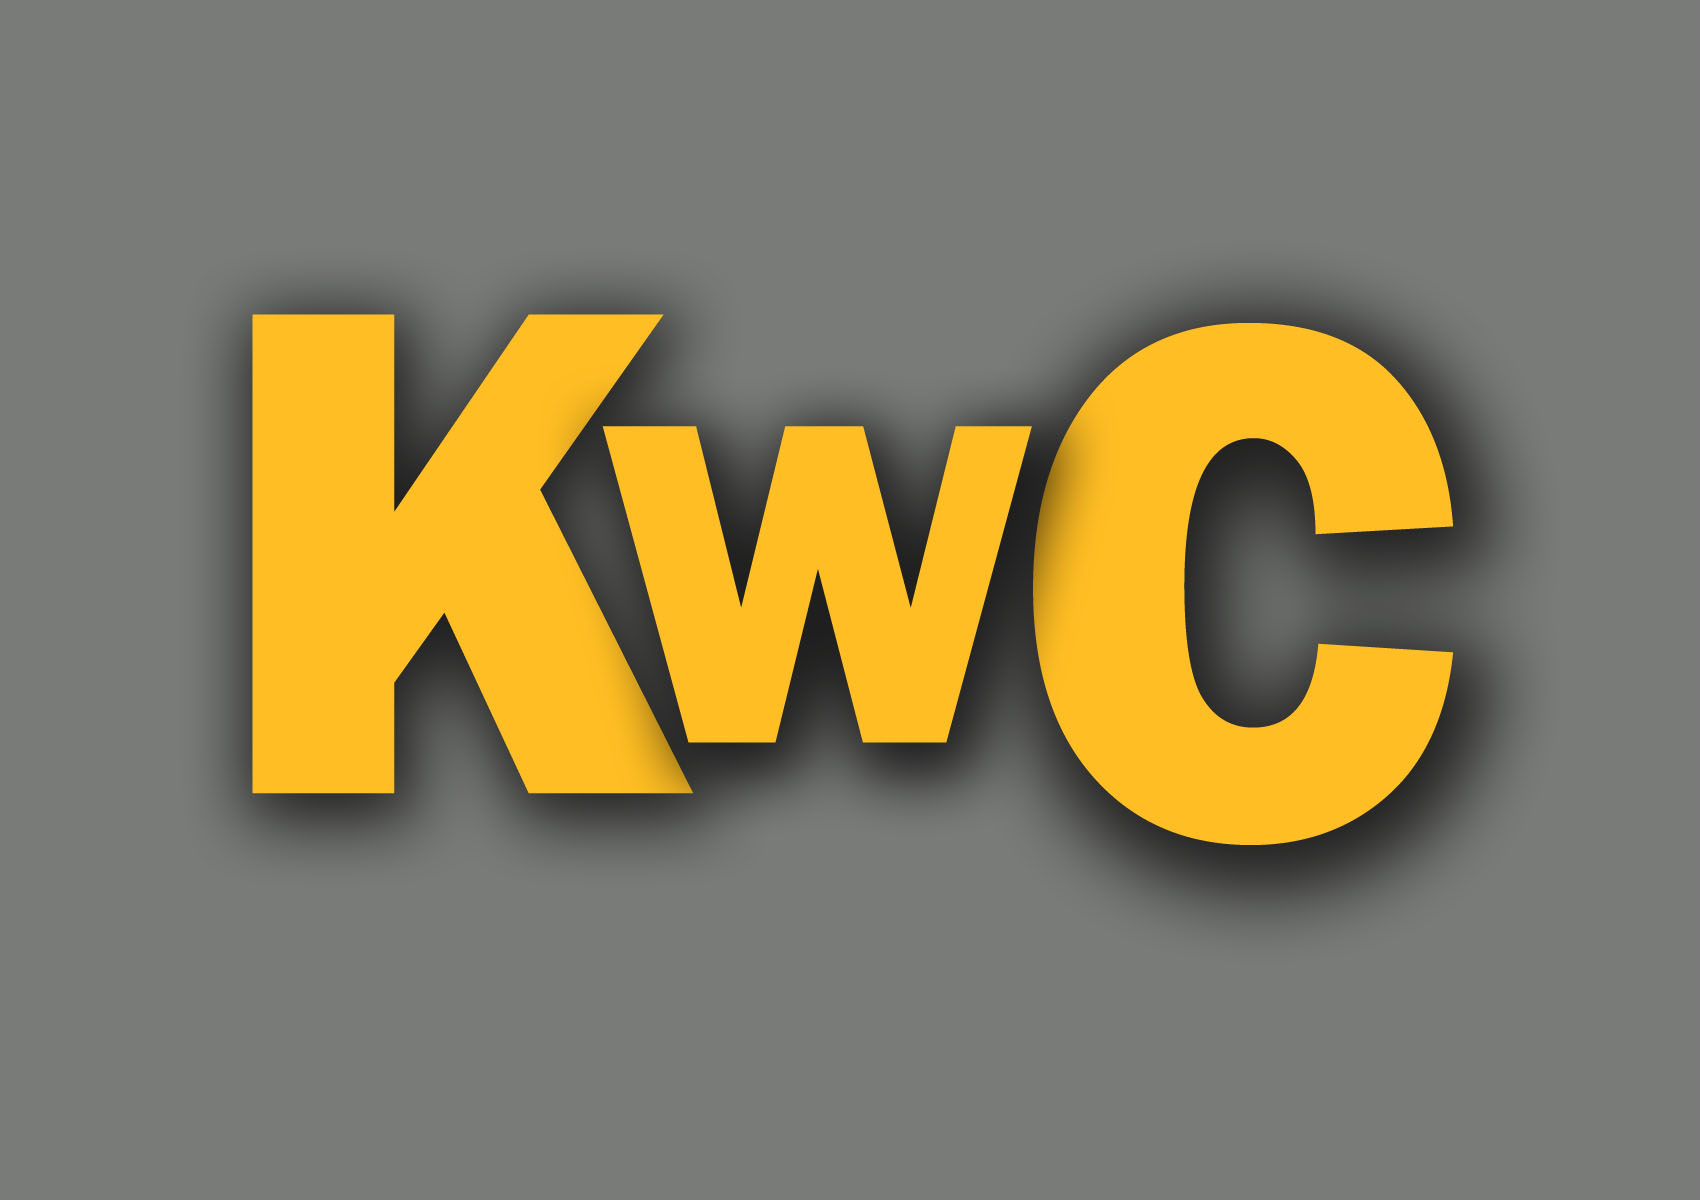 kwc